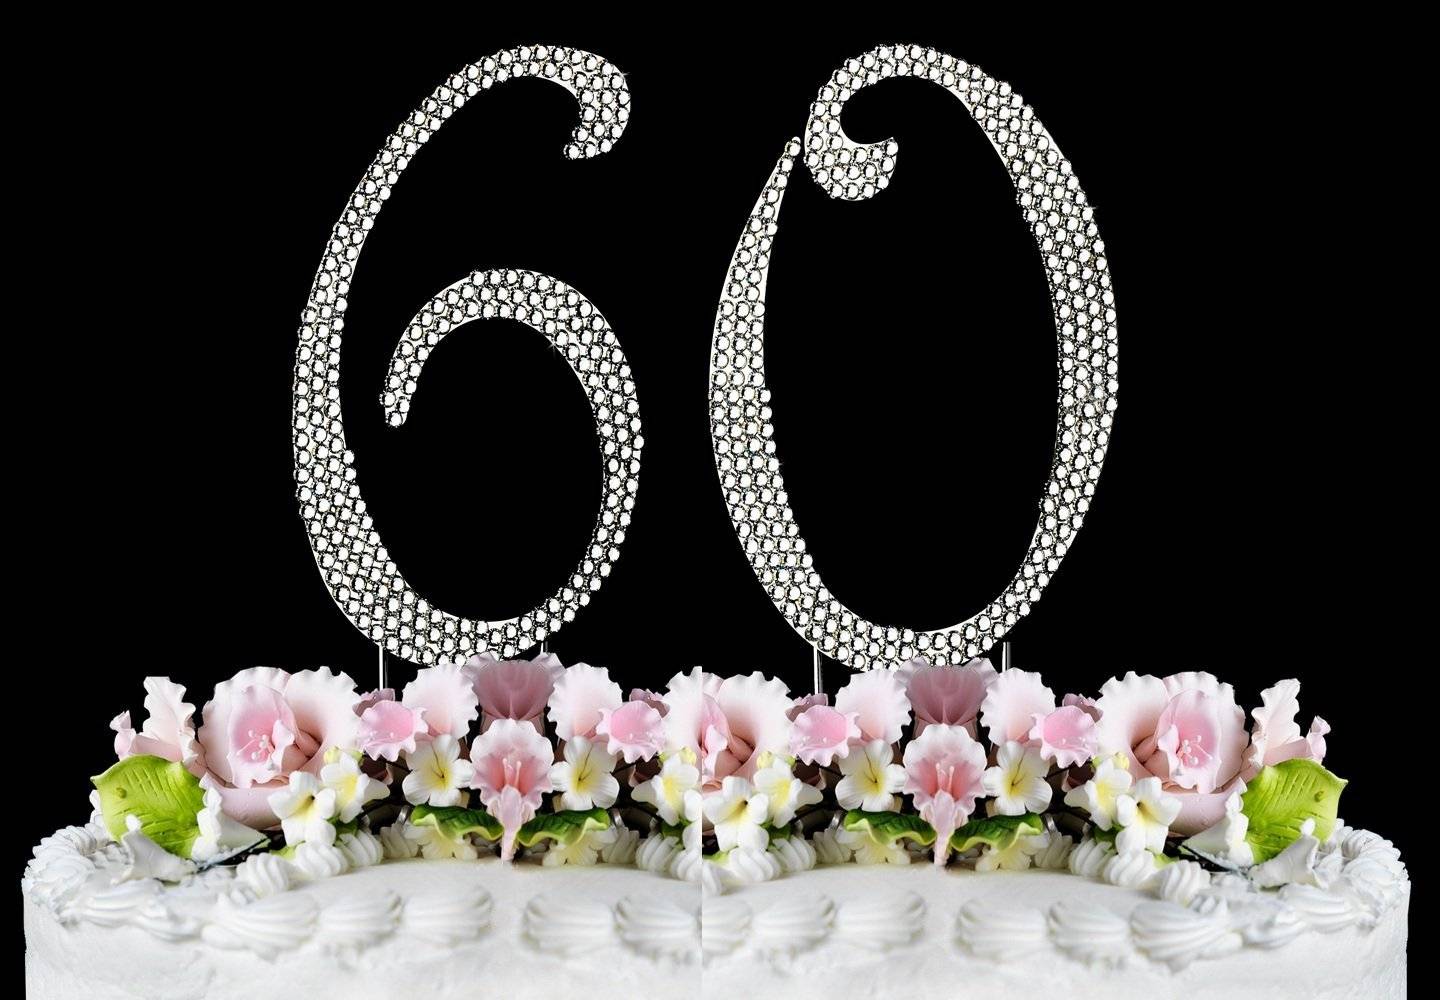 Бриллиантовая свадьба (60 лет): как отметить и что подарить на на бриллиантовую свадьбу